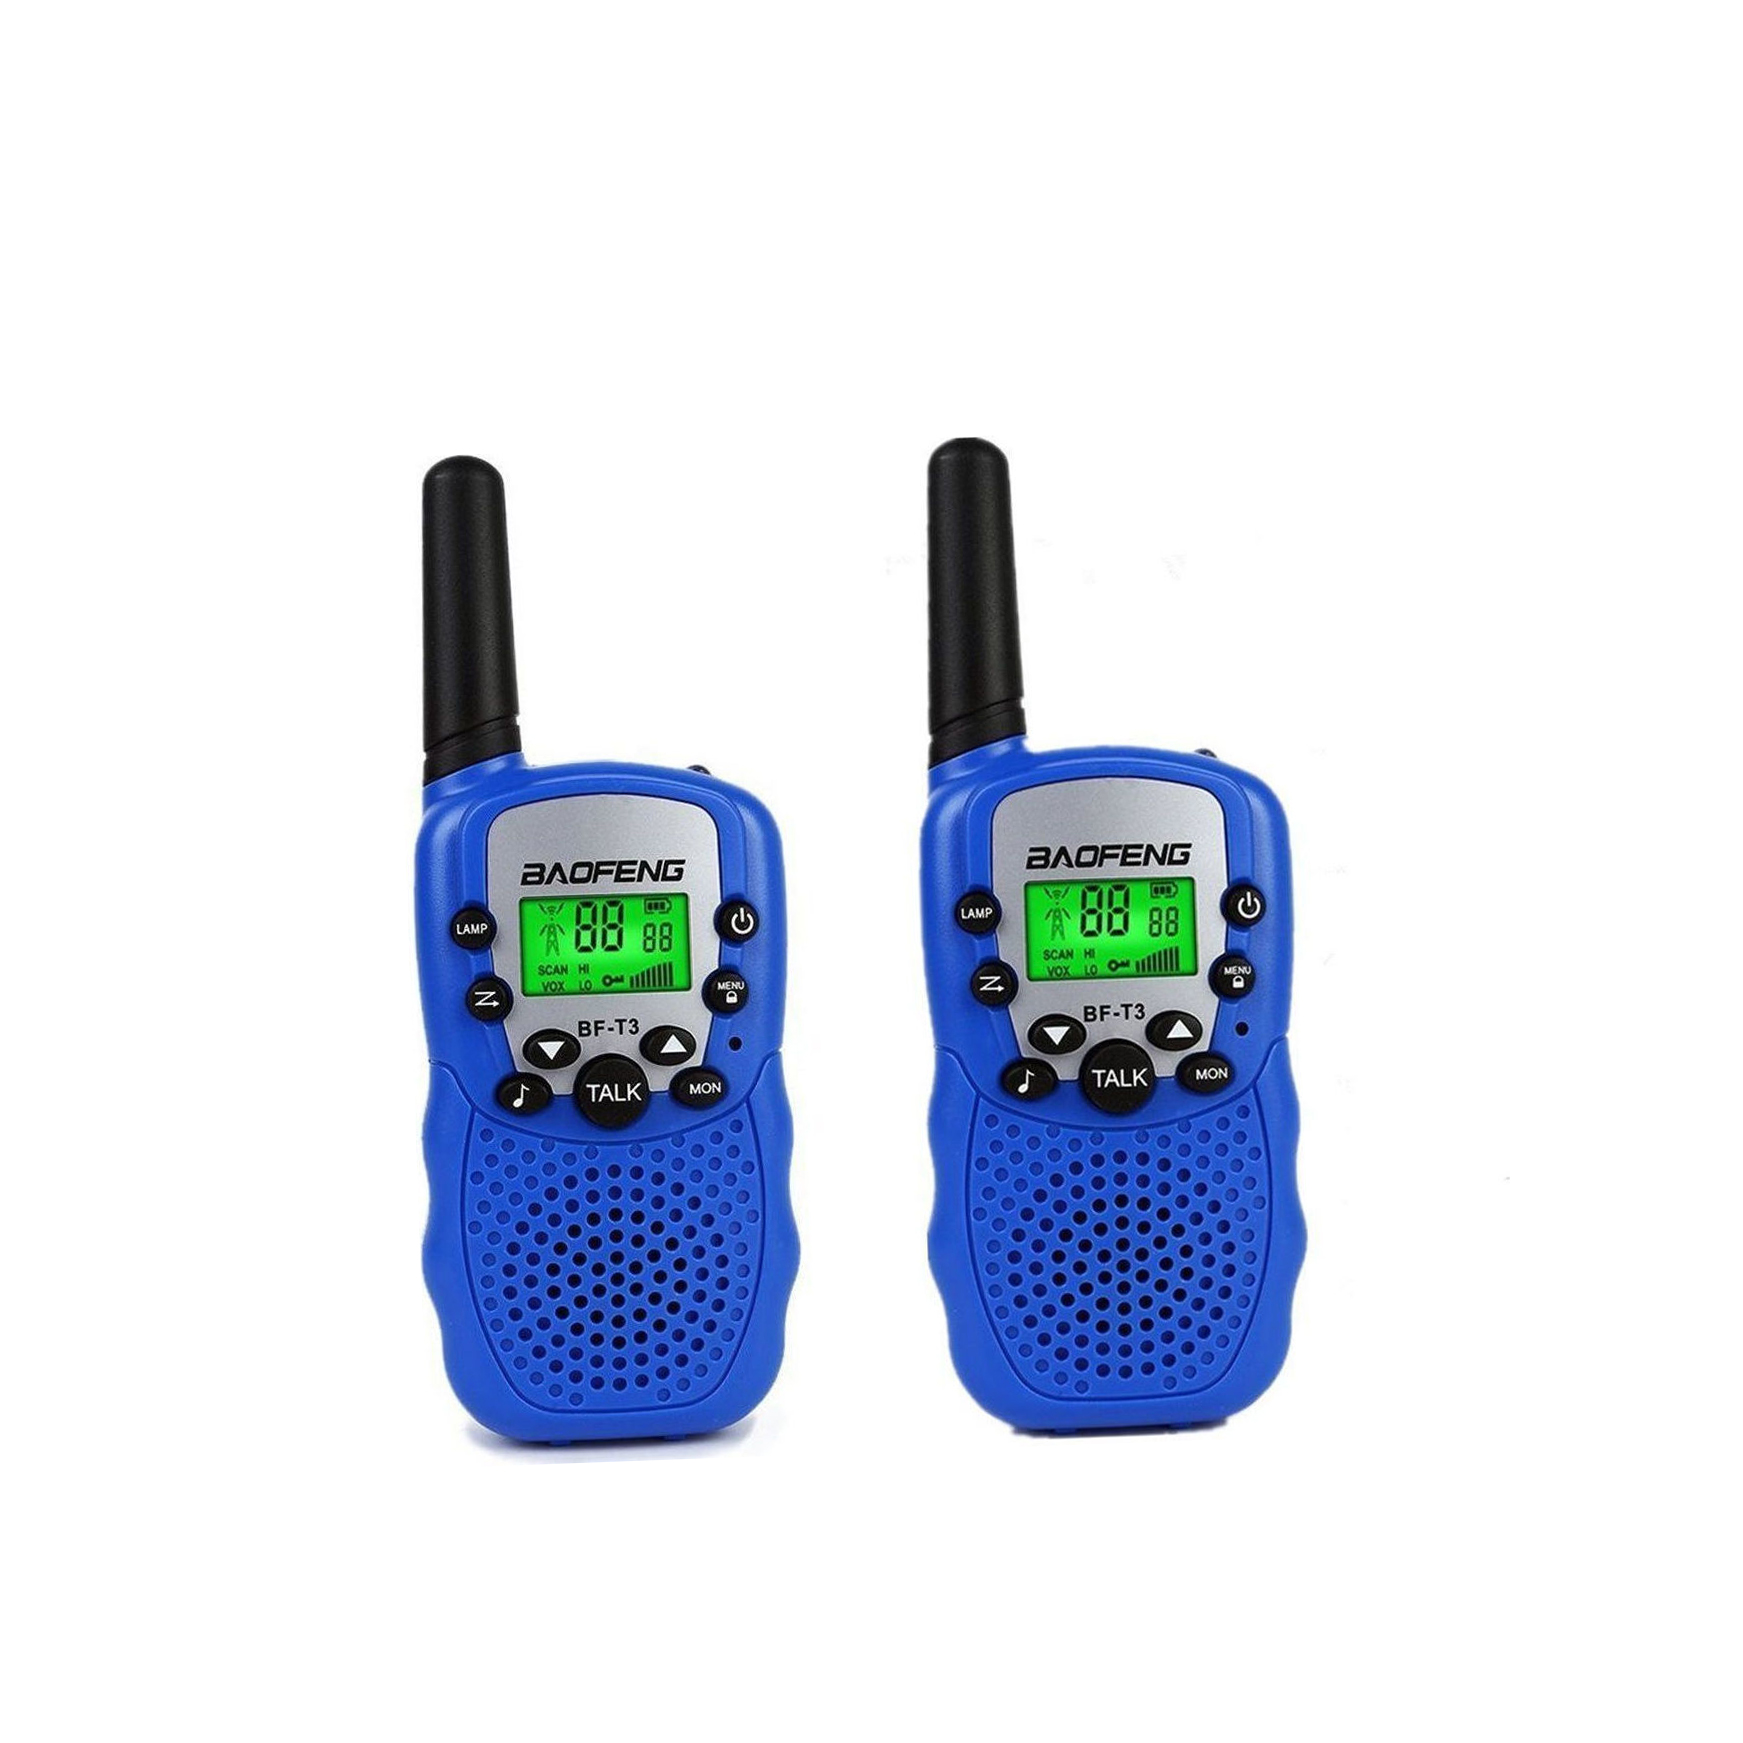 ασύρματοι πομποδέκτες - baofeng bf-t3 walkie talkie σετ 2τμχ (χρώμα μπλέ)